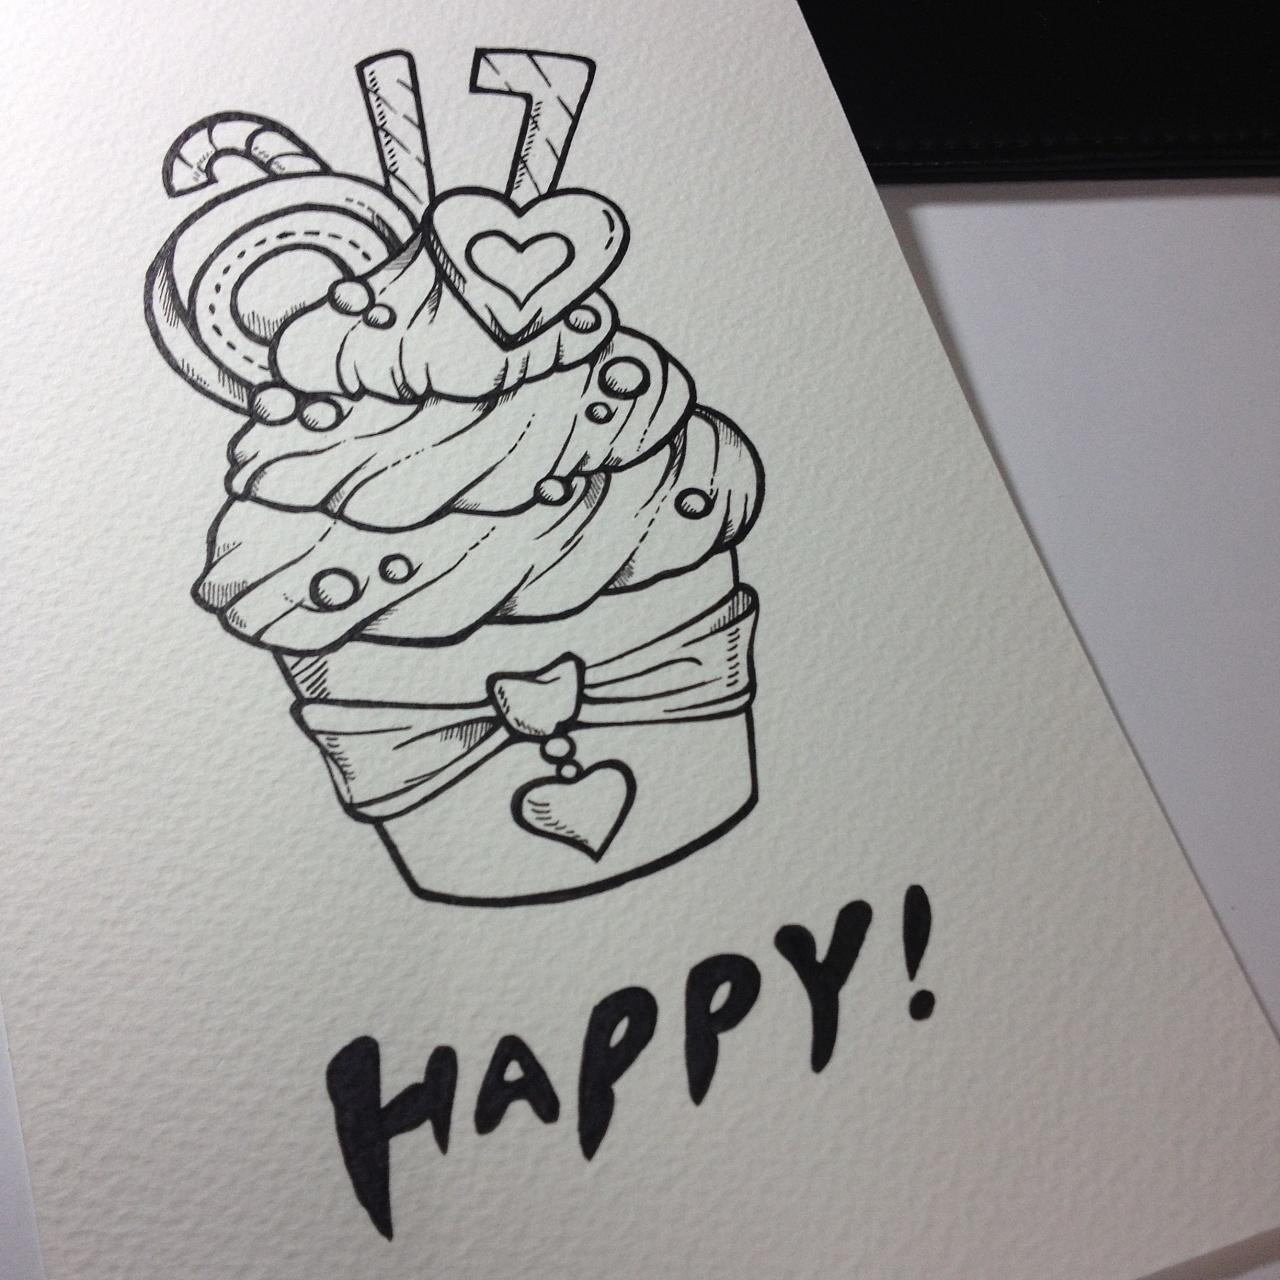 三层生日蛋糕简笔画画法图片步骤💛巧艺网